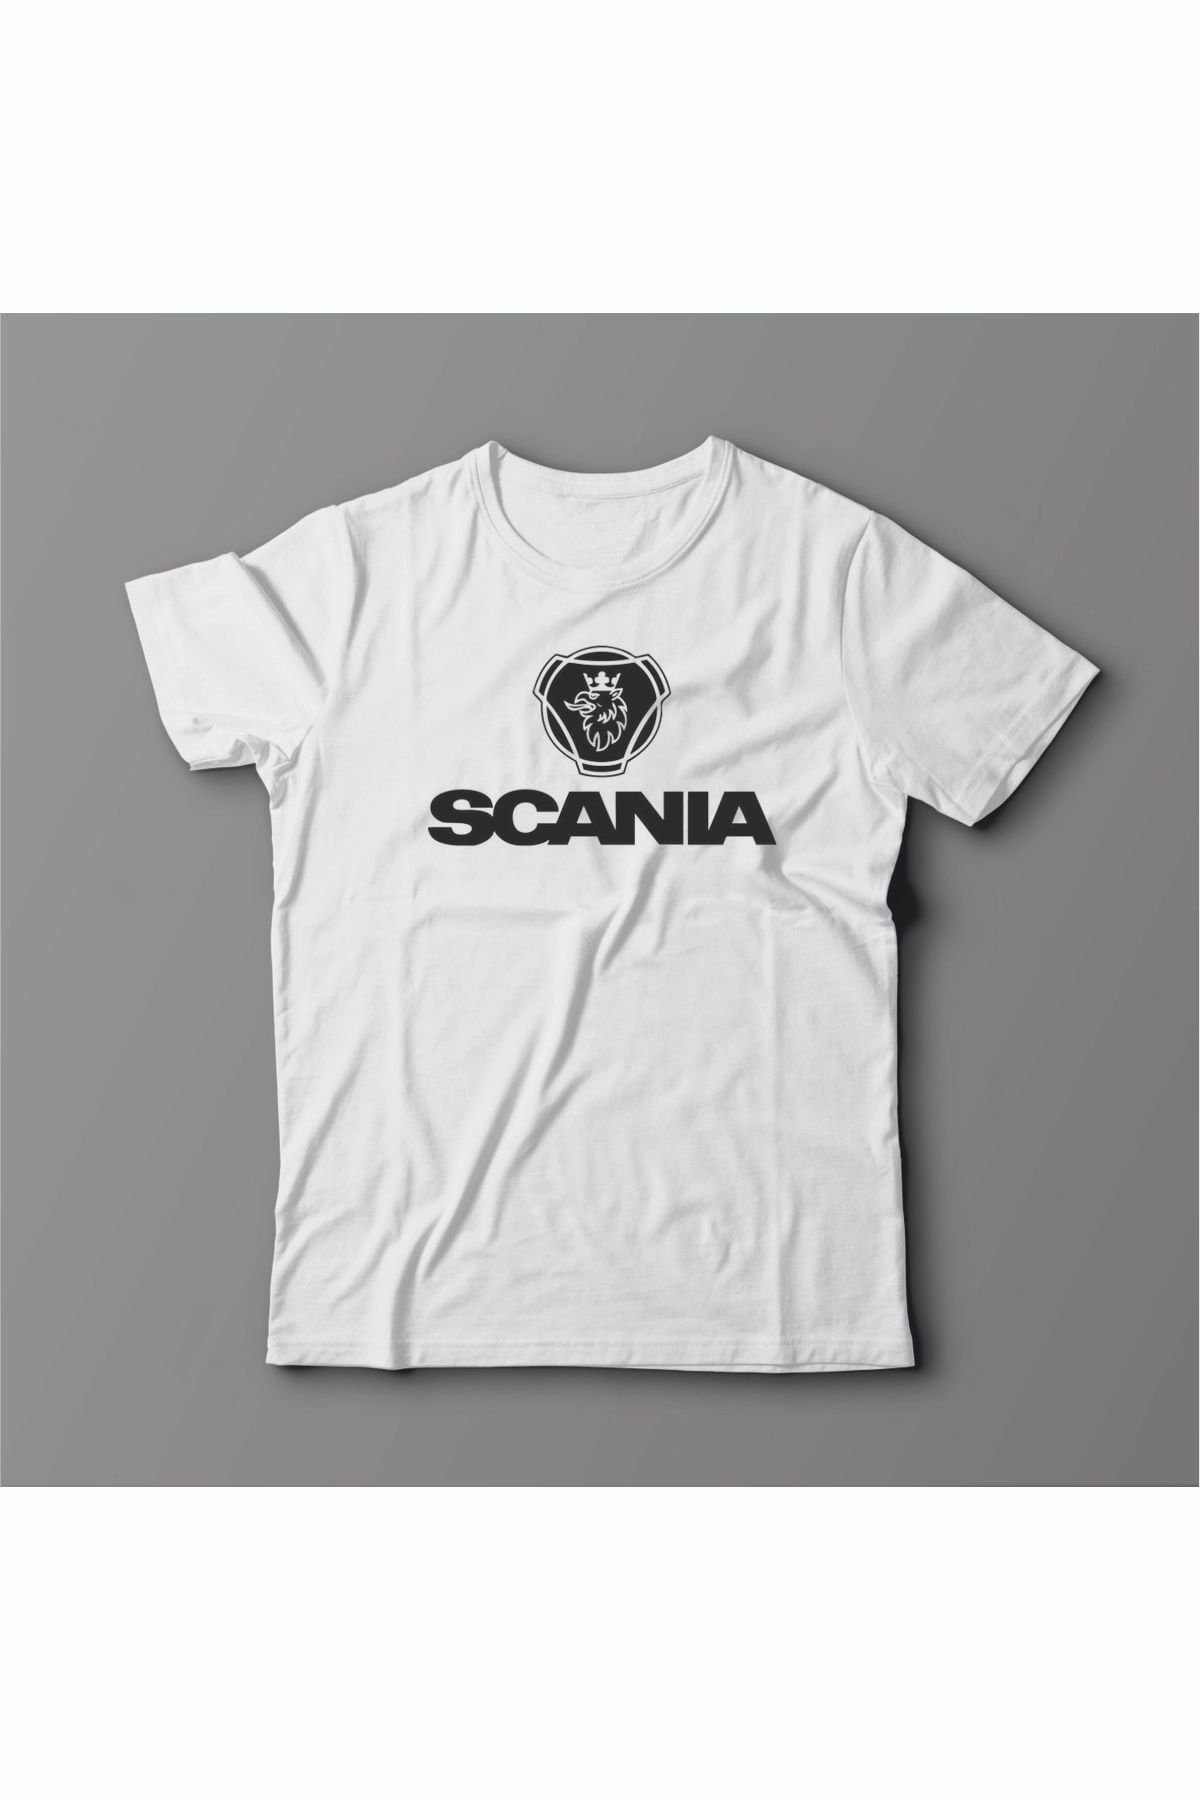 Açık Garaj Scania Graphic Baskılı Tişört